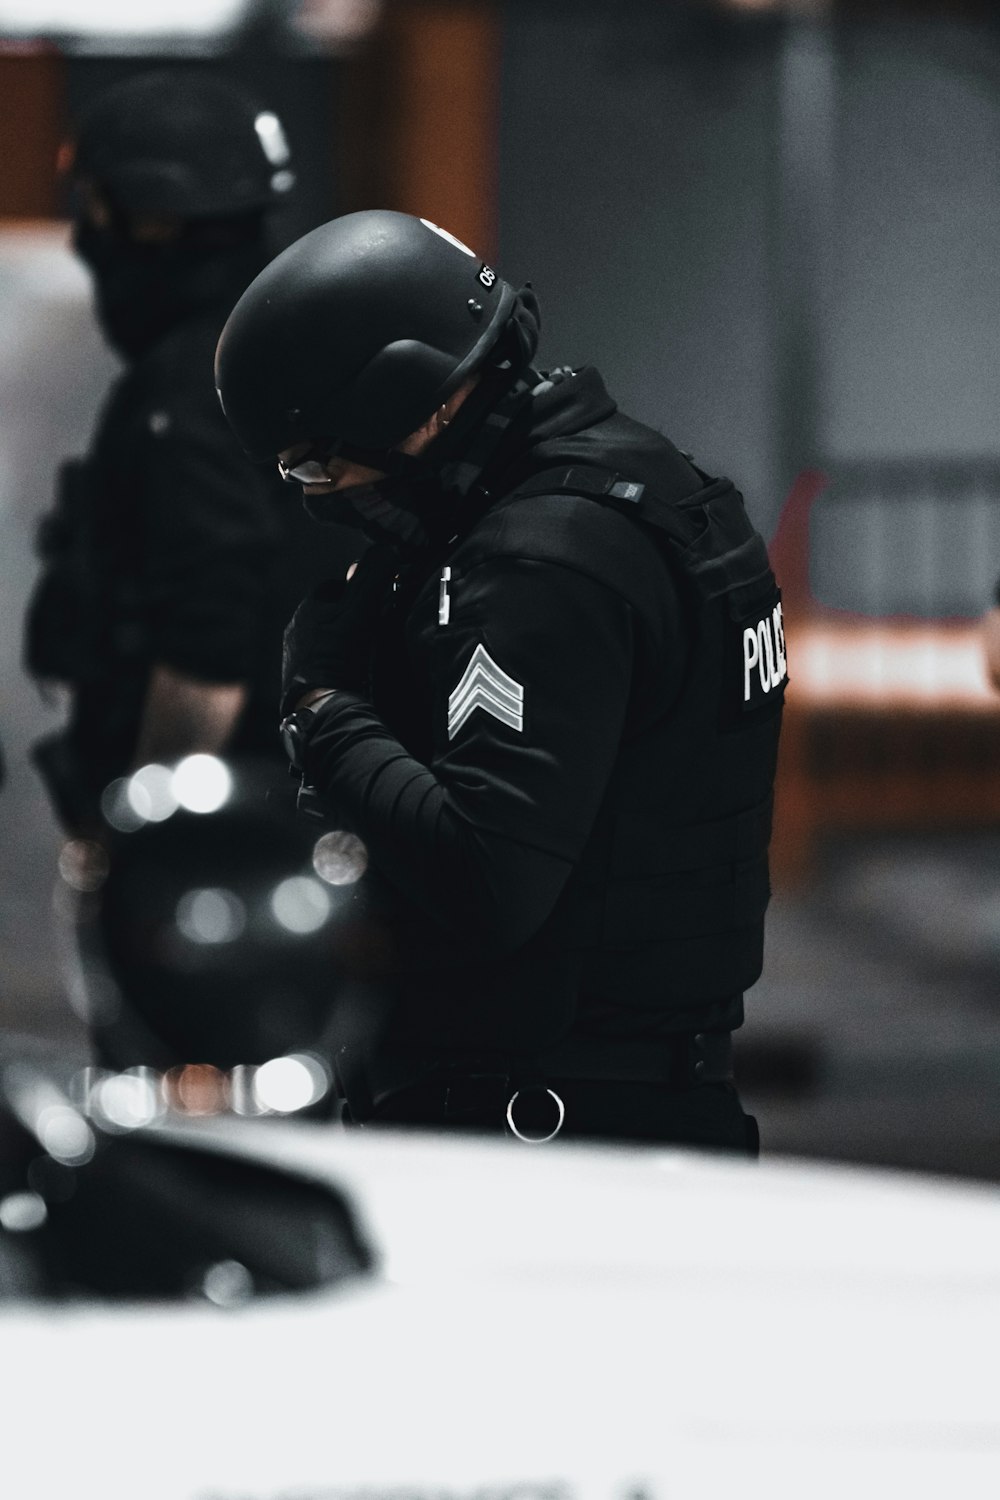 man in black jacket and helmet